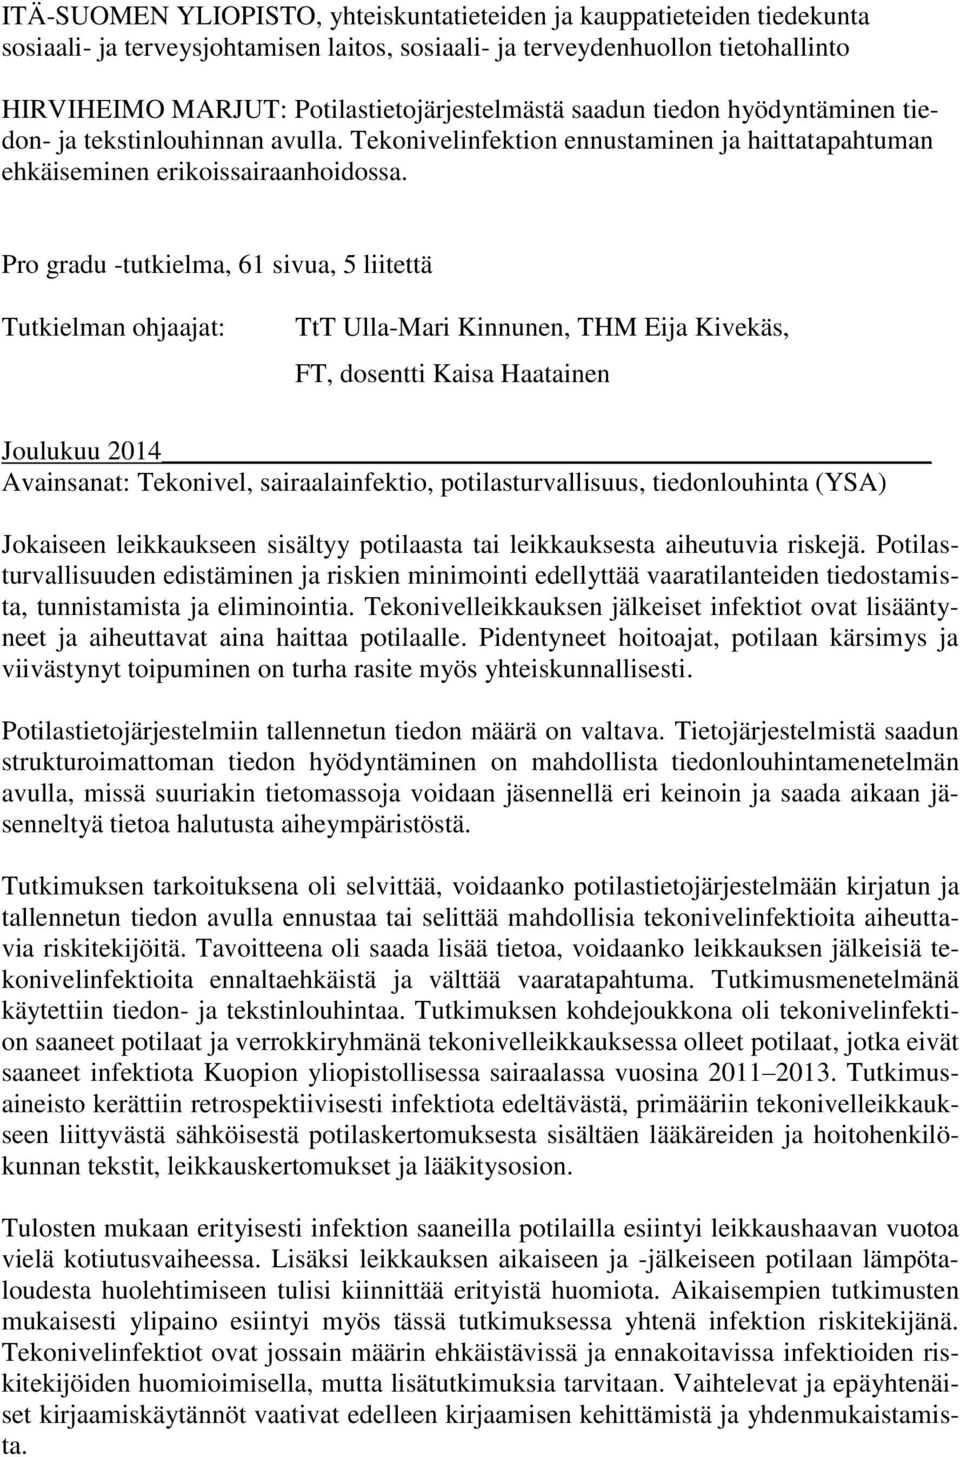 Pro gradu -tutkielma, 61 sivua, 5 liitettä Tutkielman ohjaajat: TtT Ulla-Mari Kinnunen, THM Eija Kivekäs, FT, dosentti Kaisa Haatainen Joulukuu 2014 Avainsanat: Tekonivel, sairaalainfektio,